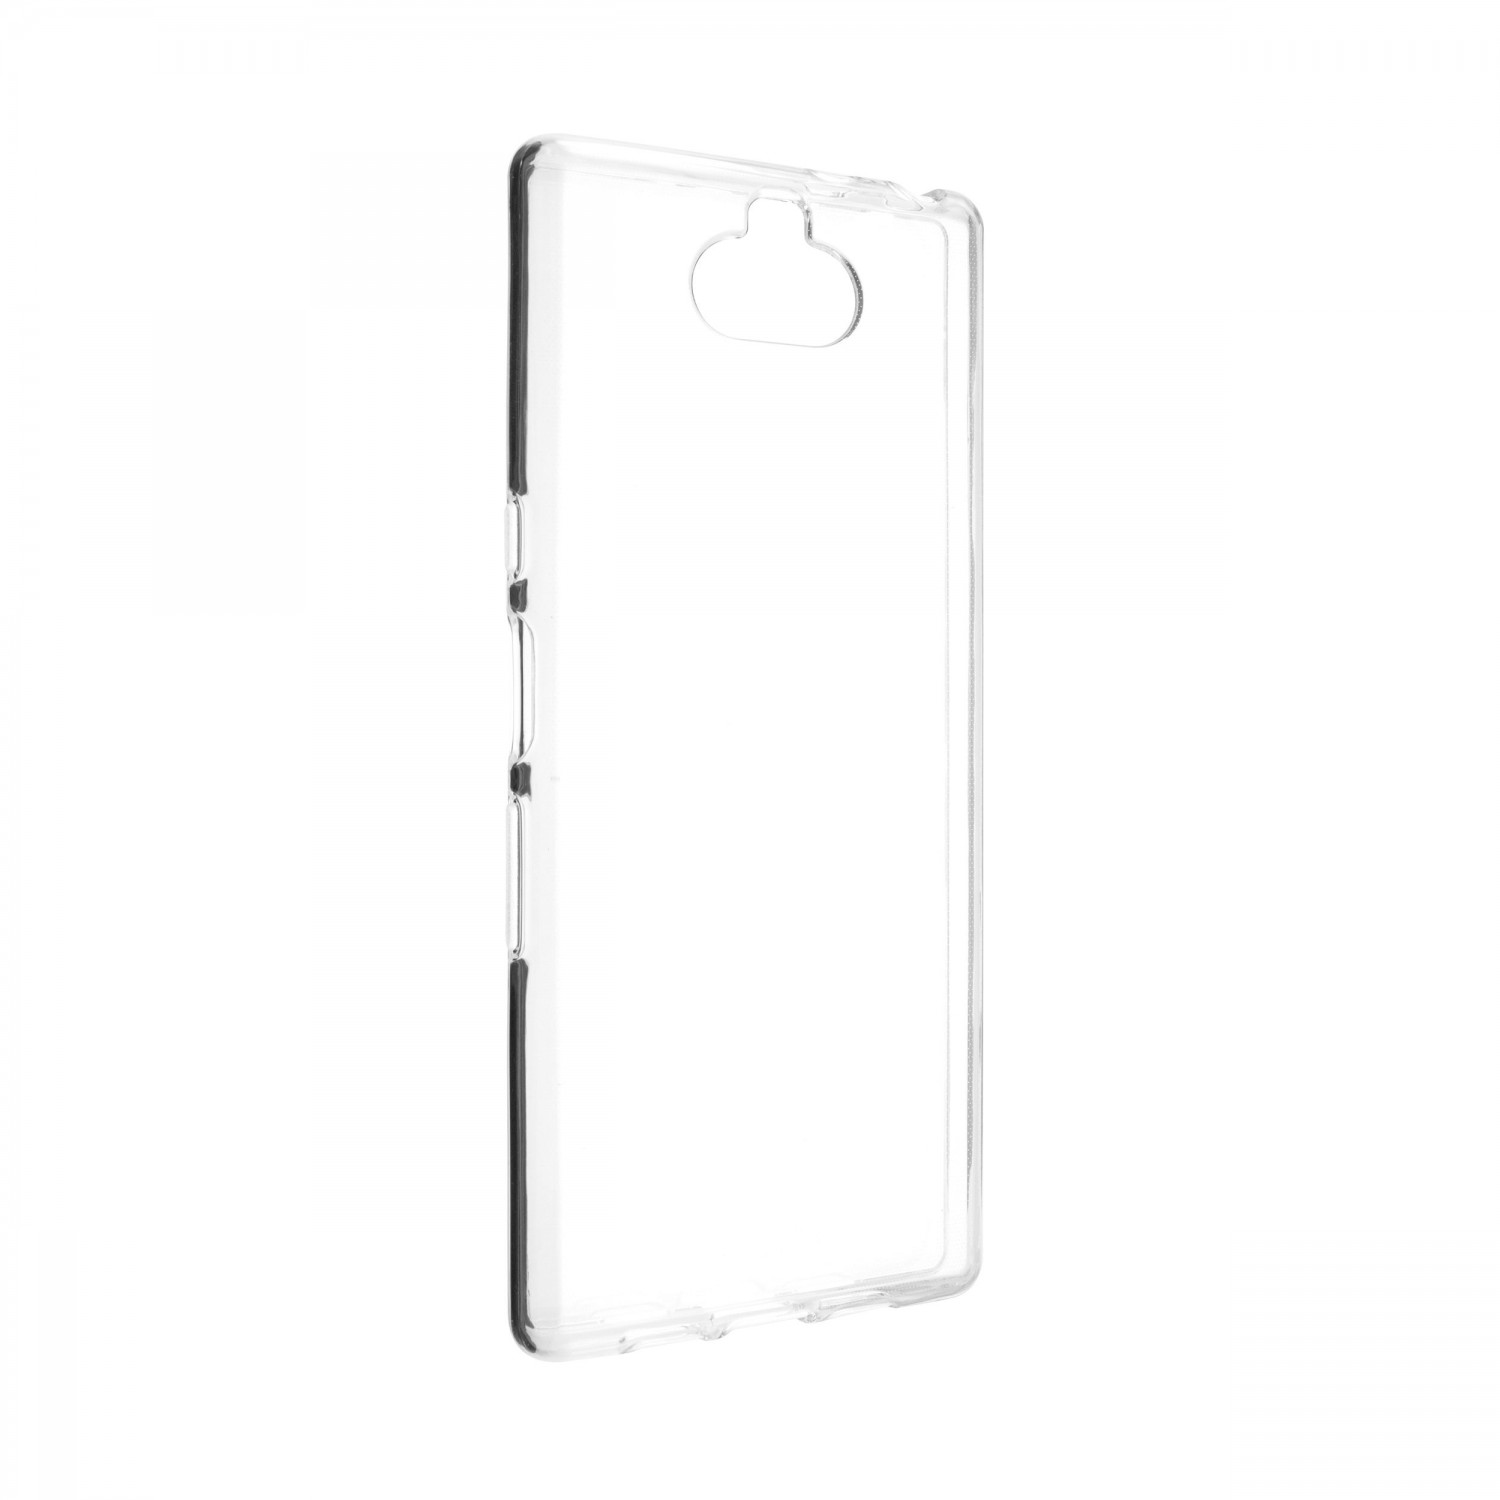 Ultratenké silikonové pouzdro FIXED Skin pro Sony Xperia 10, transparentní